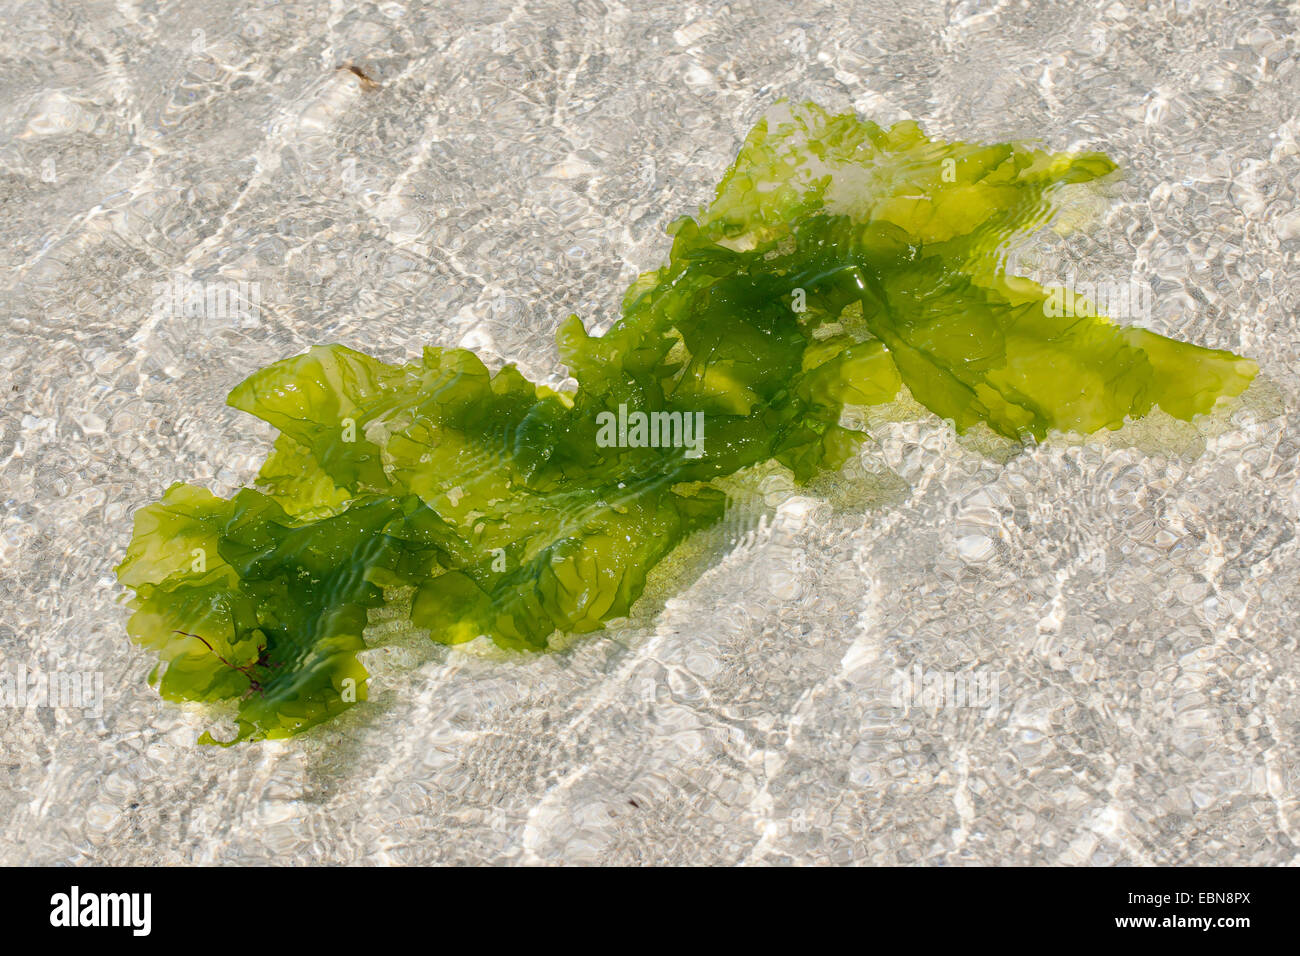 Laitue de mer (Ulva lactuca), qui dérive dans l'eau de mer, Allemagne Banque D'Images